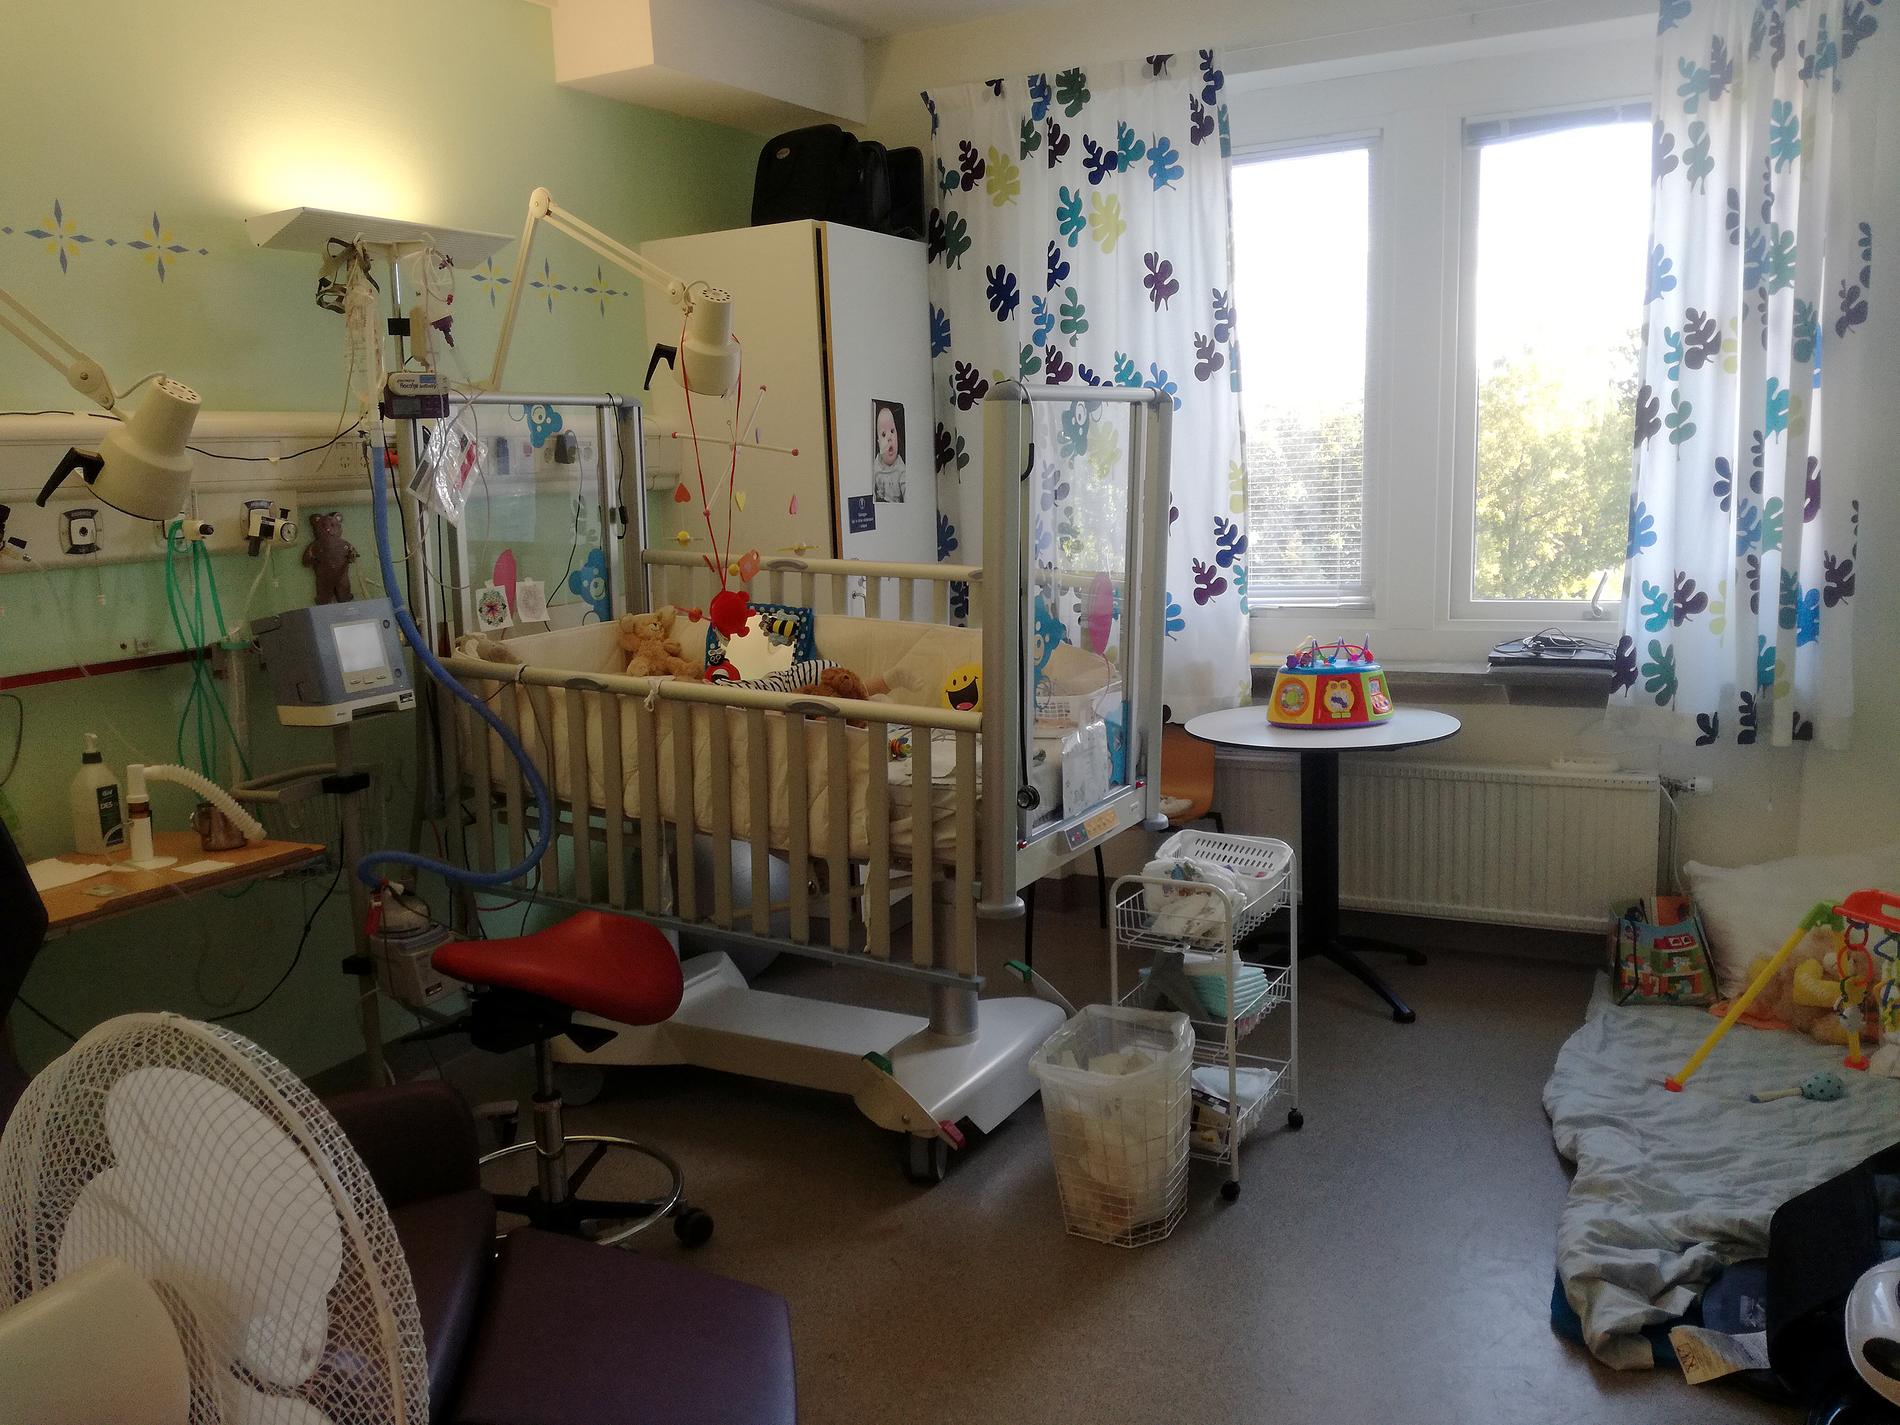 Selma har bott på sjukhus i nio månader och hennes rum börjar fyllas av barnsaker.